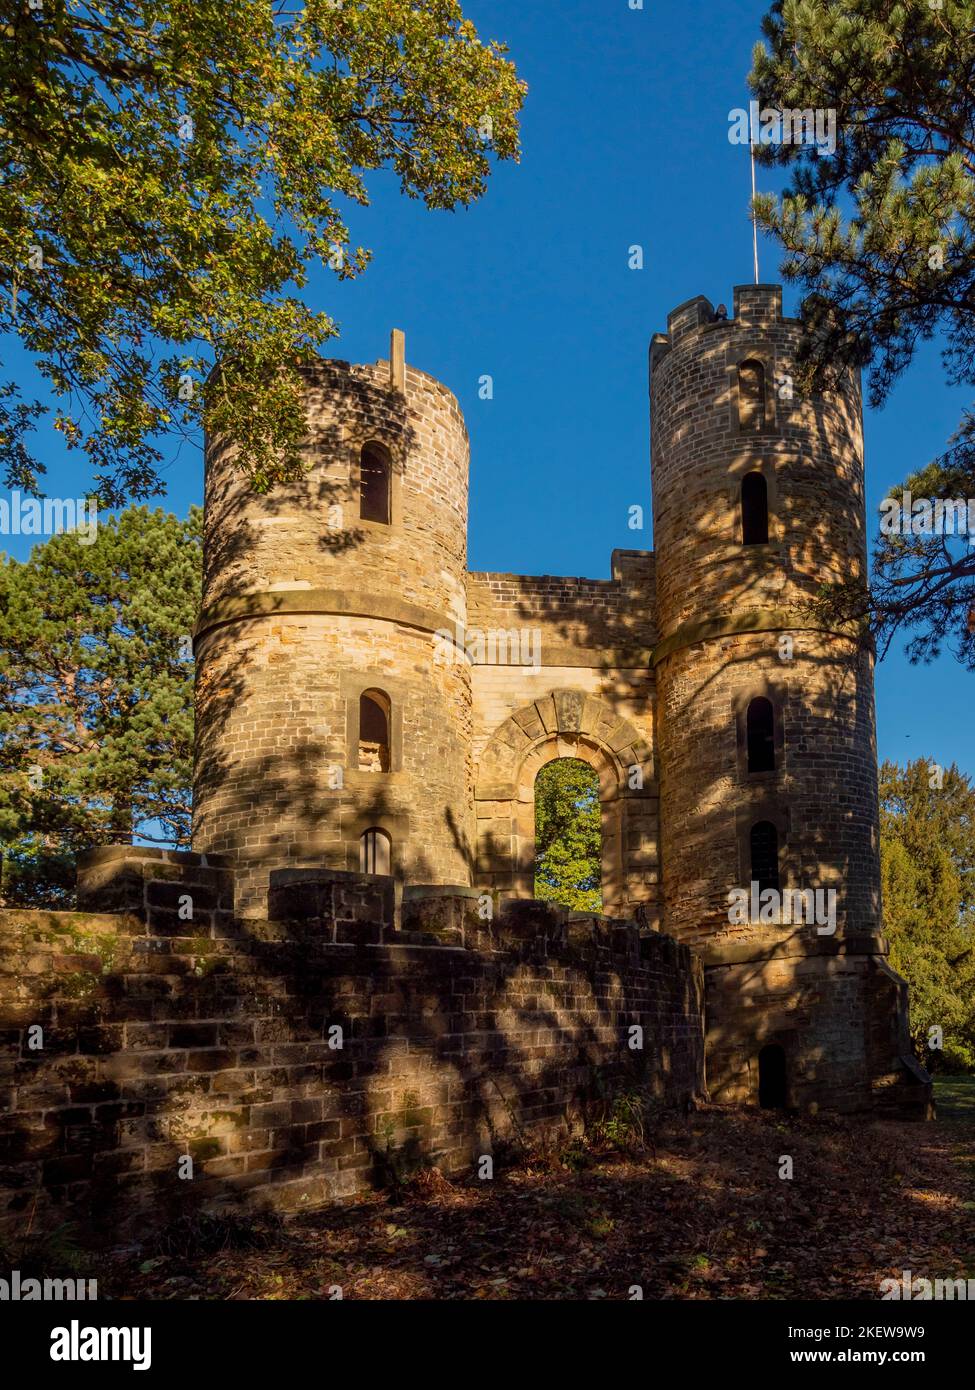 Le torrette del castello di Stainborough, una follia nei giardini del castello di Wentworth, viste contro un cielo blu in un soleggiato giorno d'autunno. REGNO UNITO Foto Stock